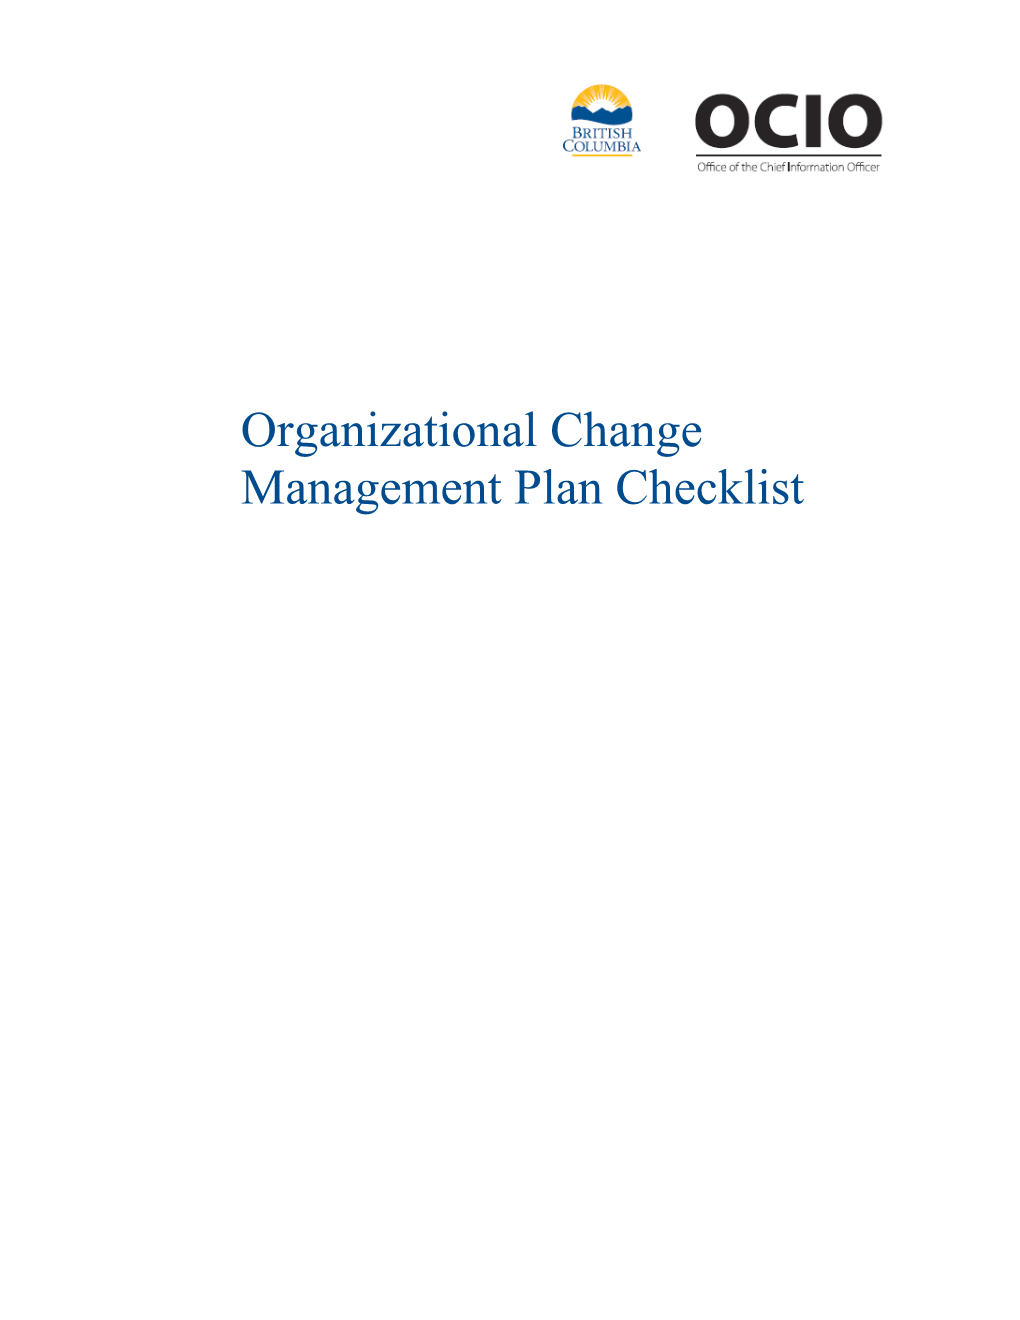 Organizational Change Management Plan Checklist